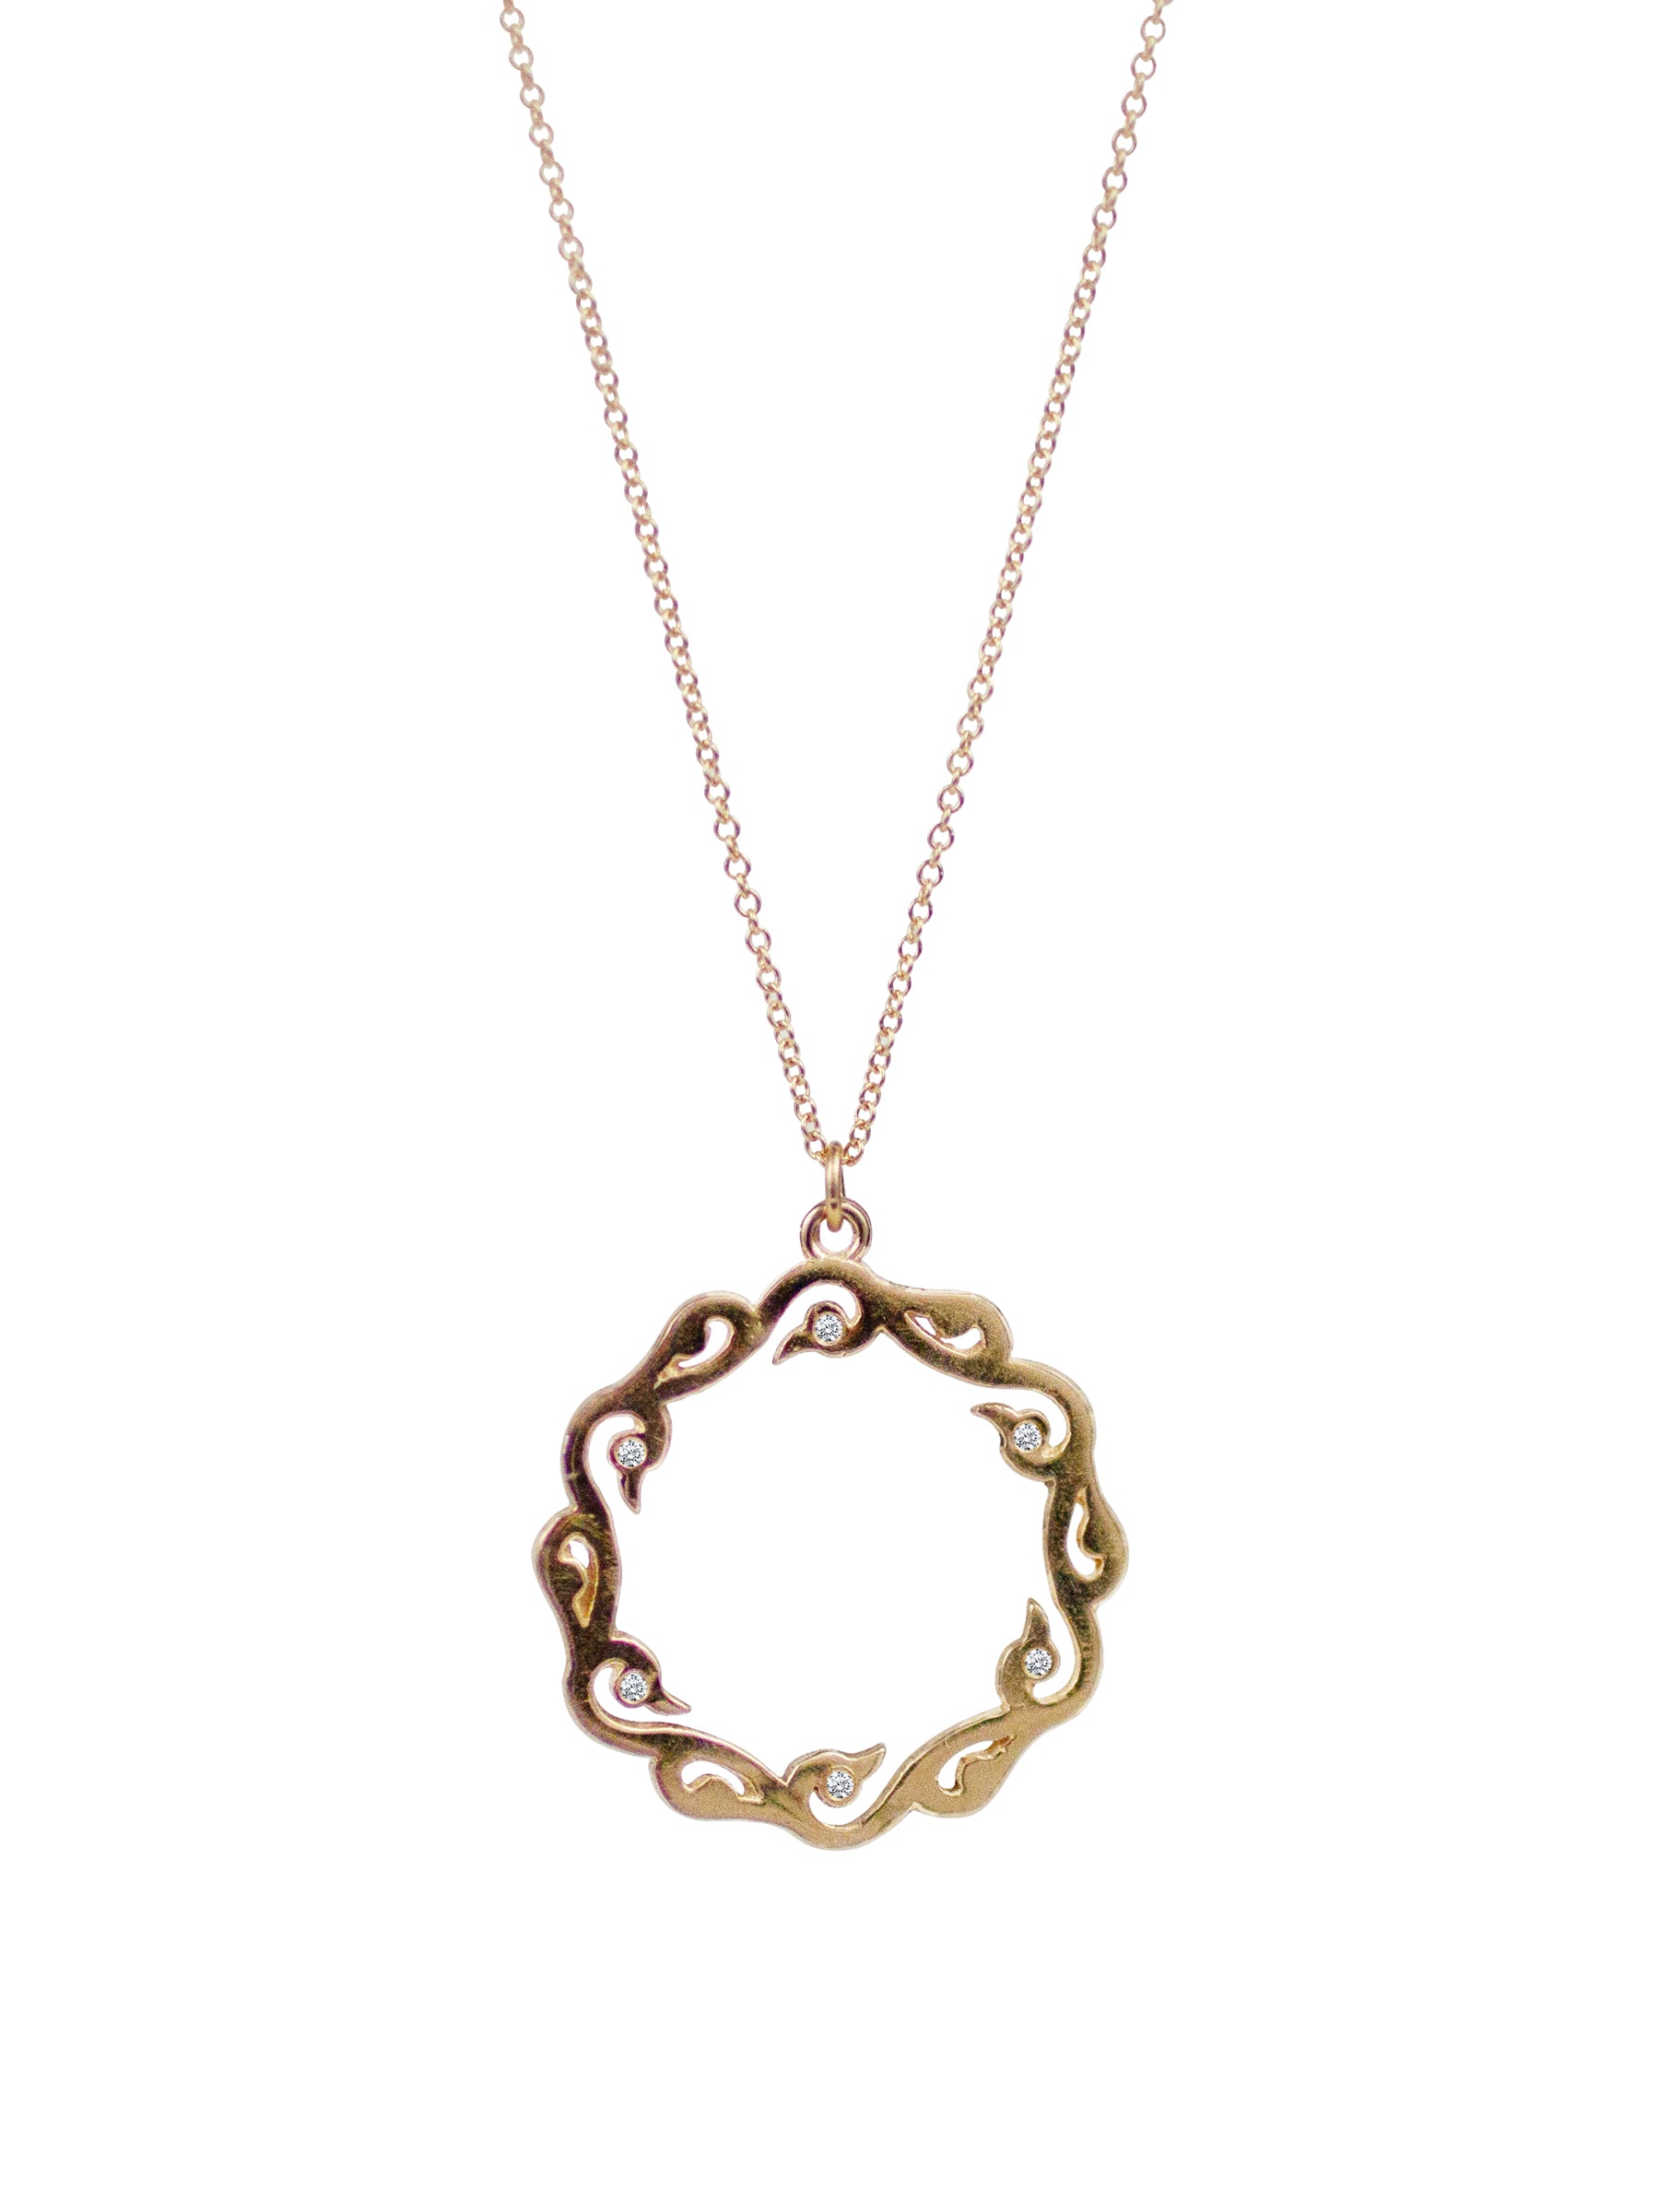 Crane Necklace - Lulu Designs Jewelry